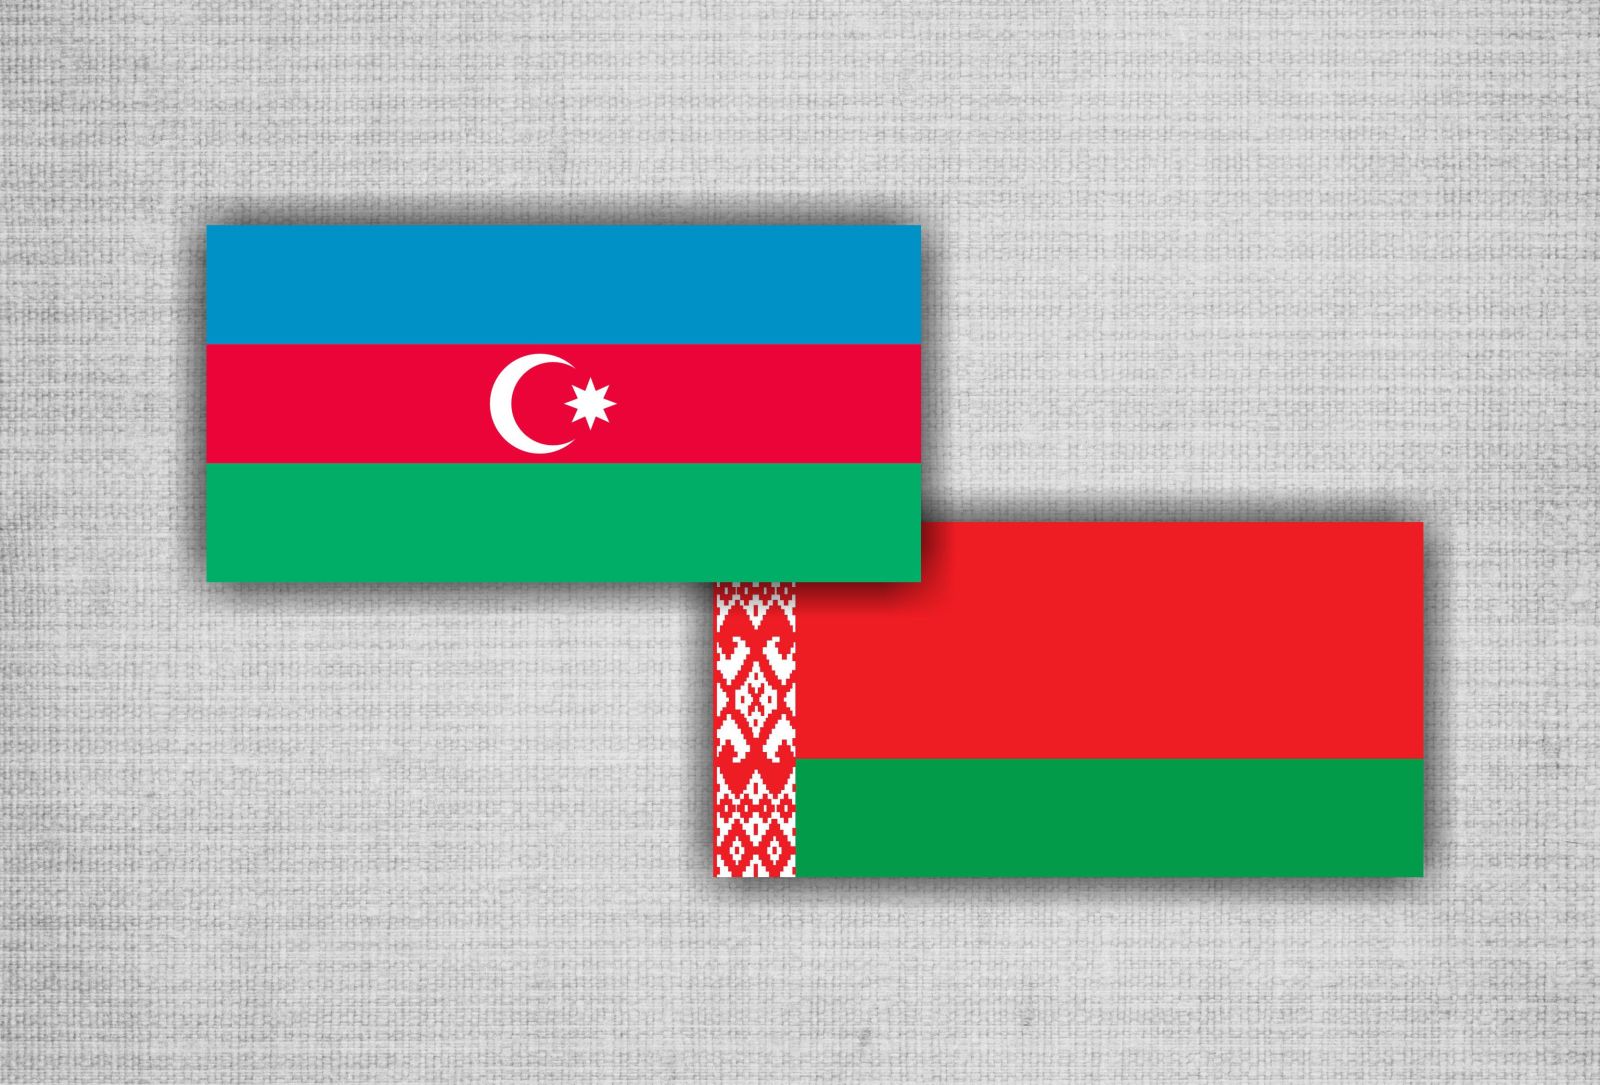 Azərbaycan-Belarus sənədləri imzalanıb - YENİLƏNİB